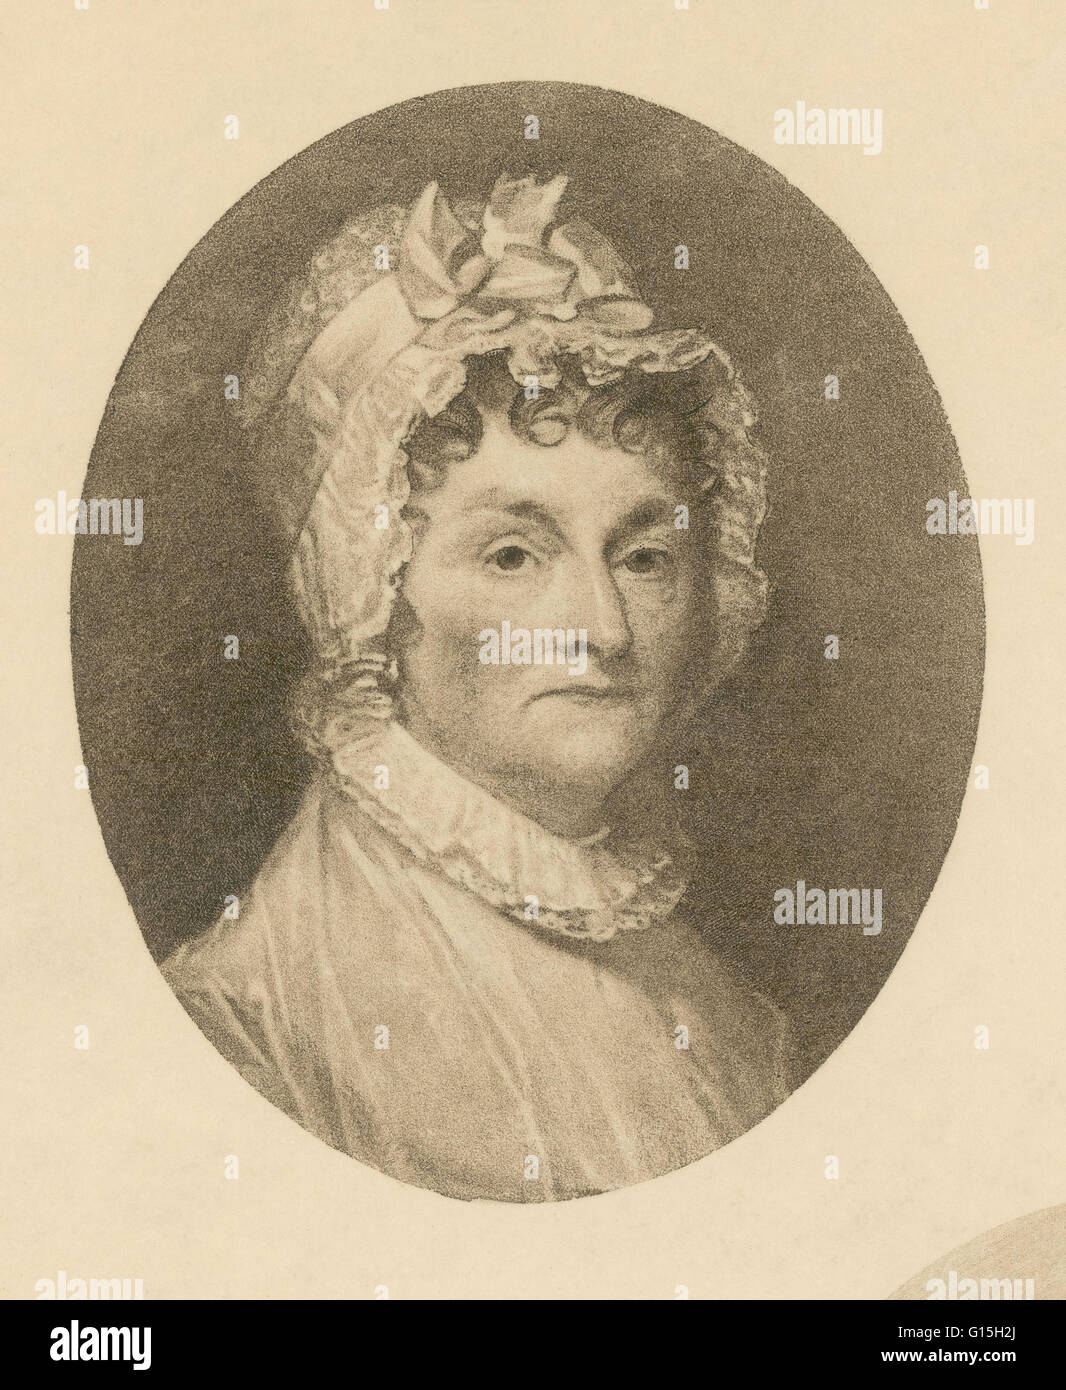 Abigail Smith Adams (22. November 1744 - 28. Oktober 1818) war die Ehefrau von John Adams, erster Vizepräsident und zweiter Präsident der Vereinigten Staaten, und die Mutter von John Quincy Adams, der sechste Präsident der Vereinigten Staaten. Ihr Leben ist einer der Stockfoto